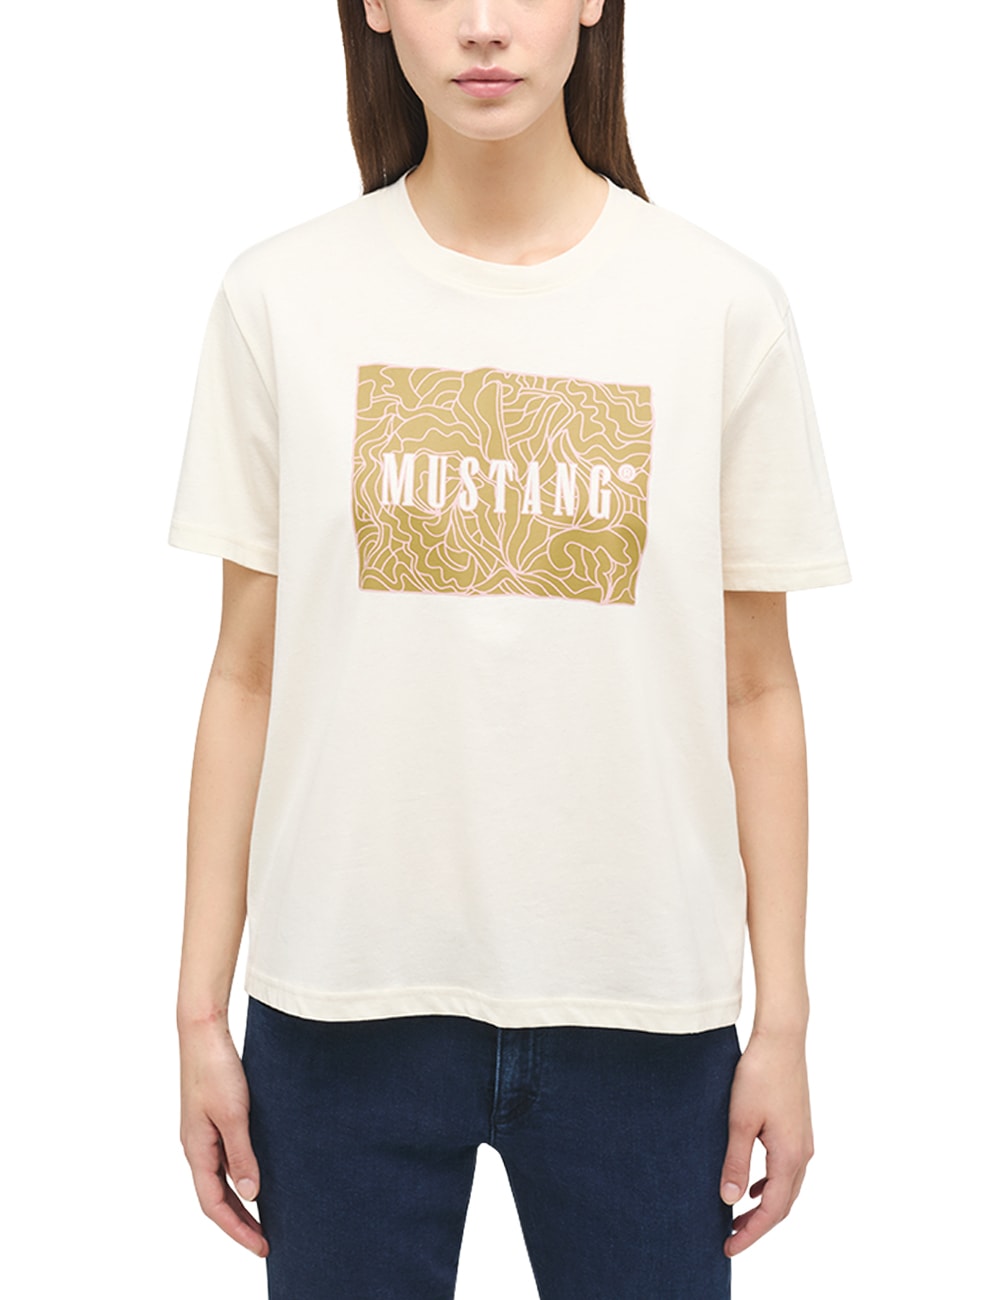 MUSTANG Kurzarmshirt »Mustang T-Shirt Print-Shirt« online bestellen | BAUR